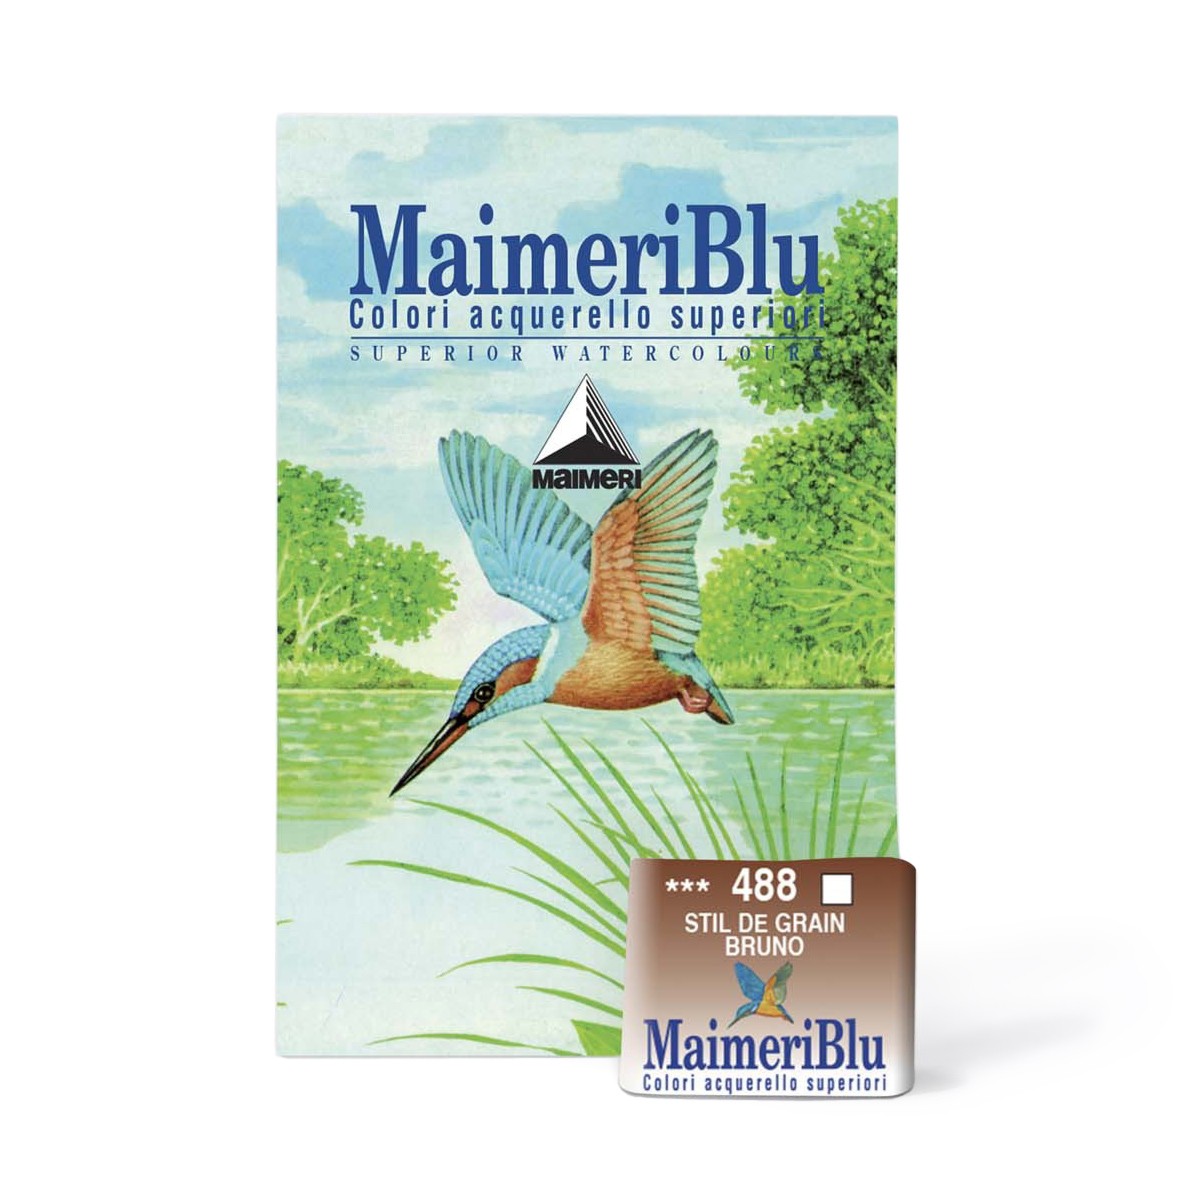 фото Maimeri краска акварельная maimeri blu, кювета 1.5мл, 488 коричневый стил де грэн